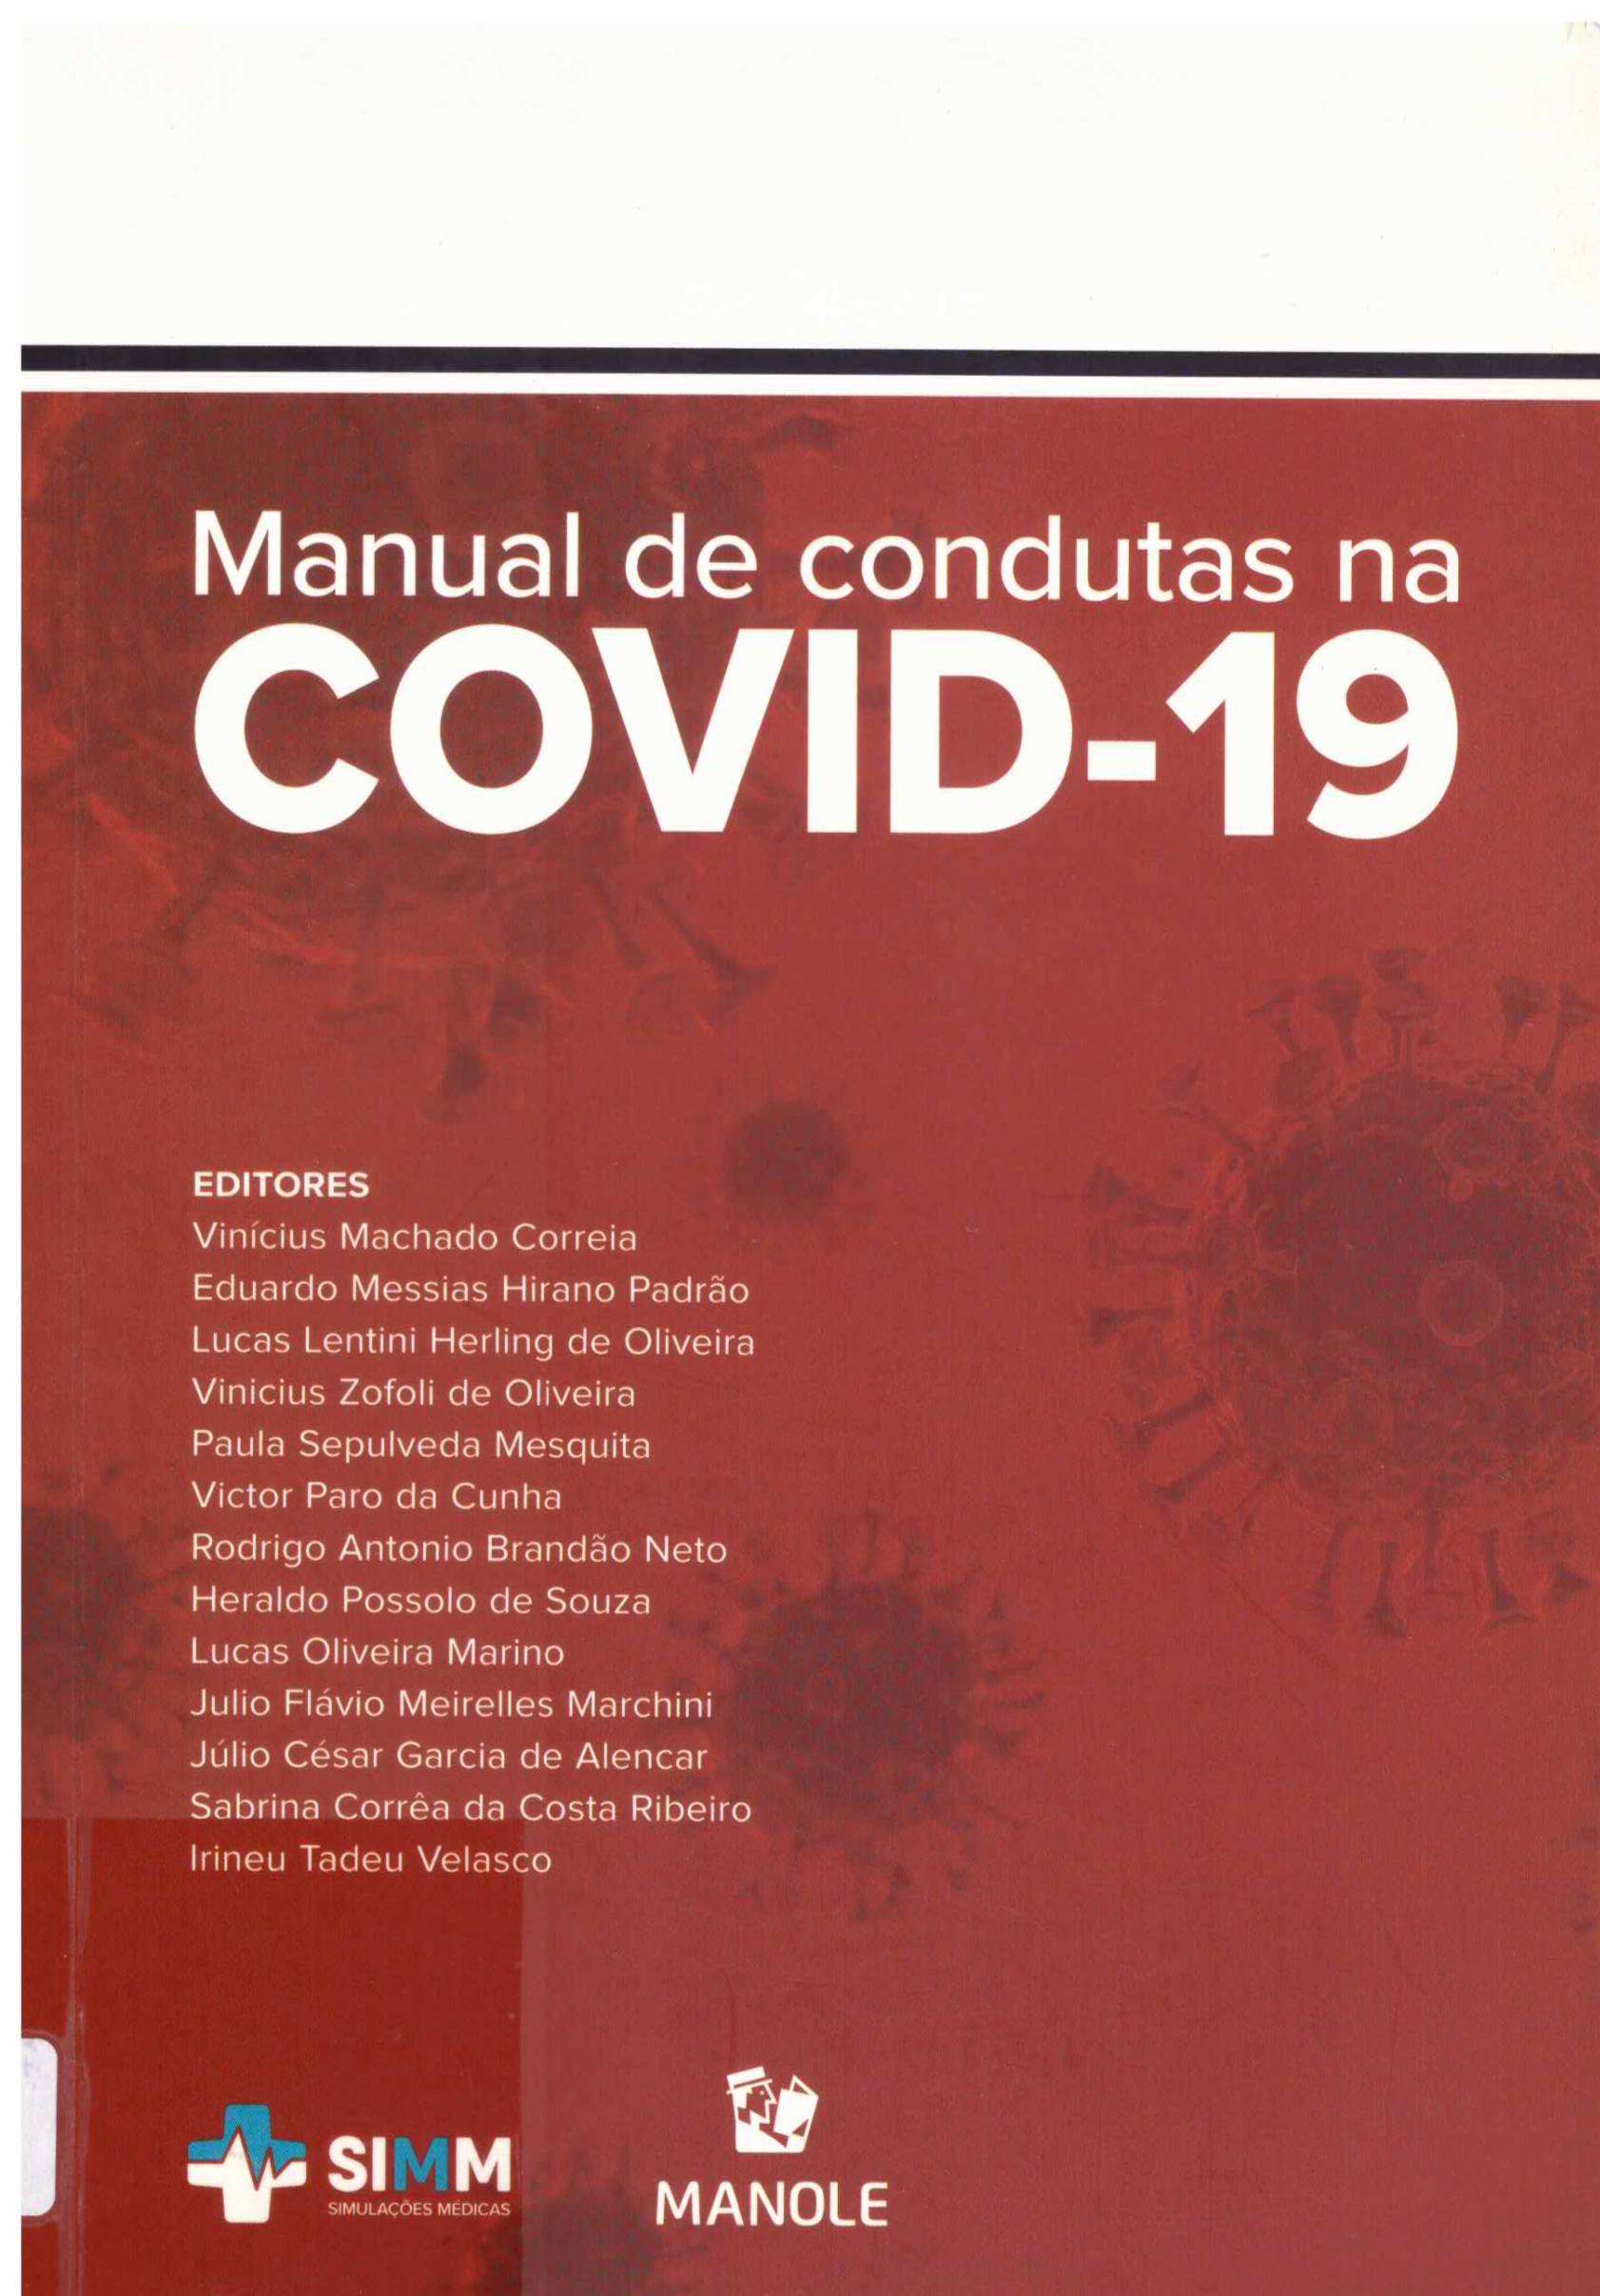 manual de condutas na COVID-19